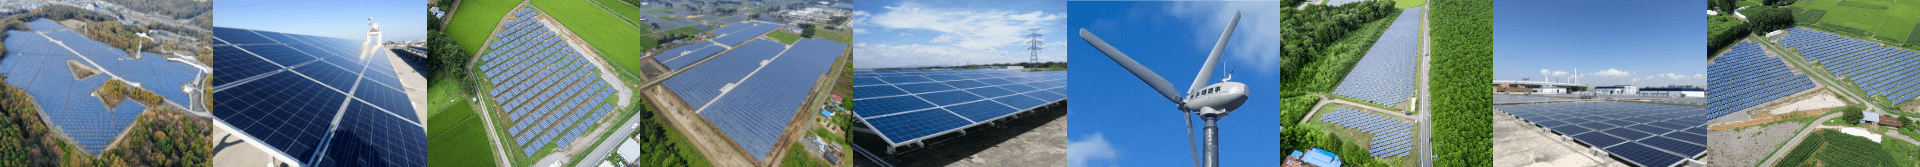 太阳能发电所  业绩